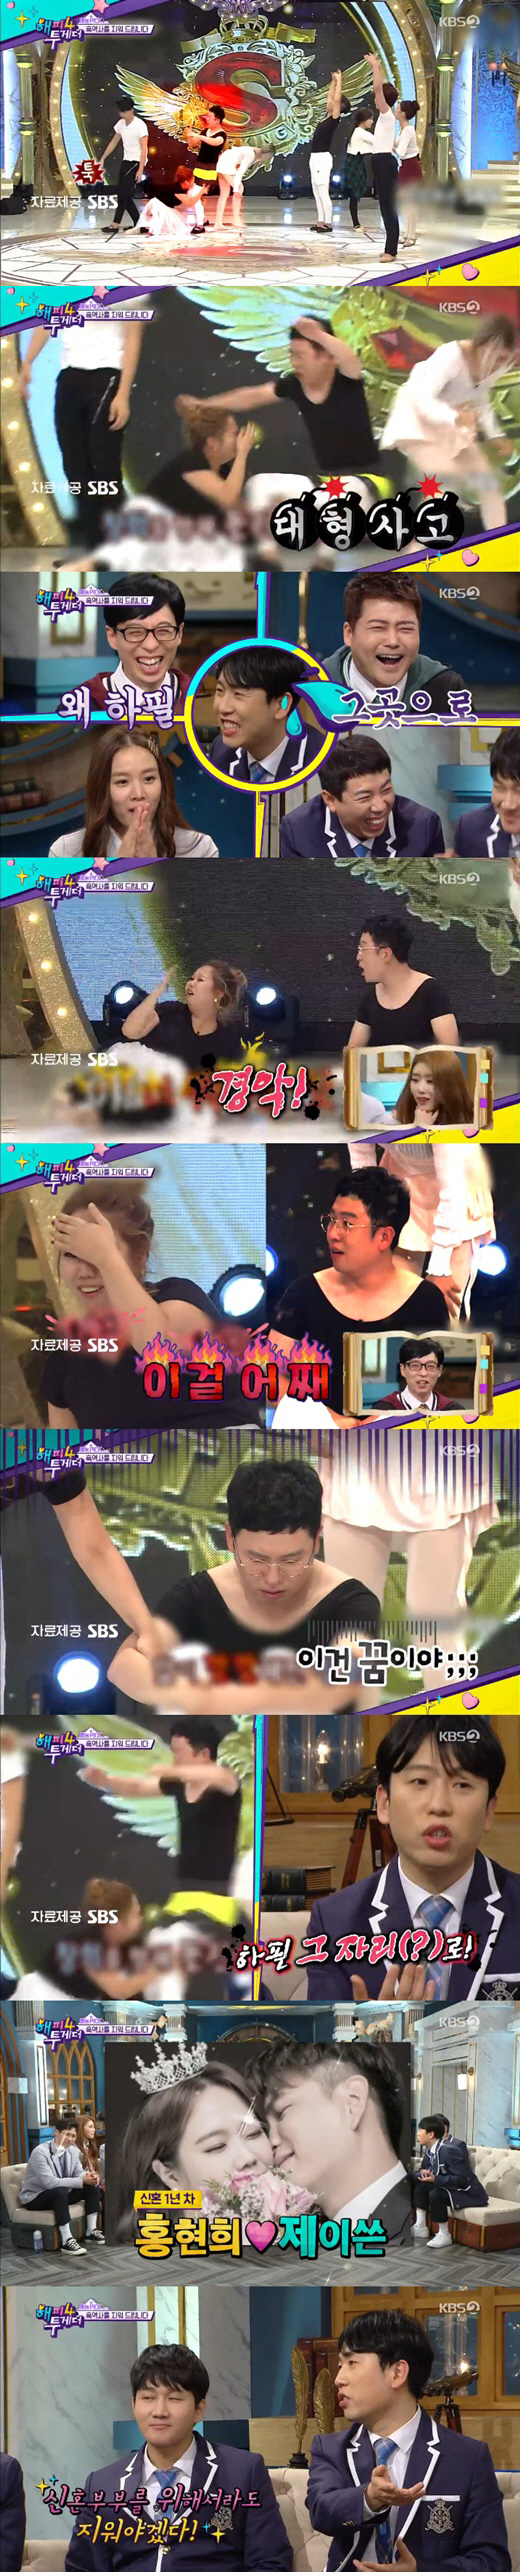 KBS 2TV 방송캡처